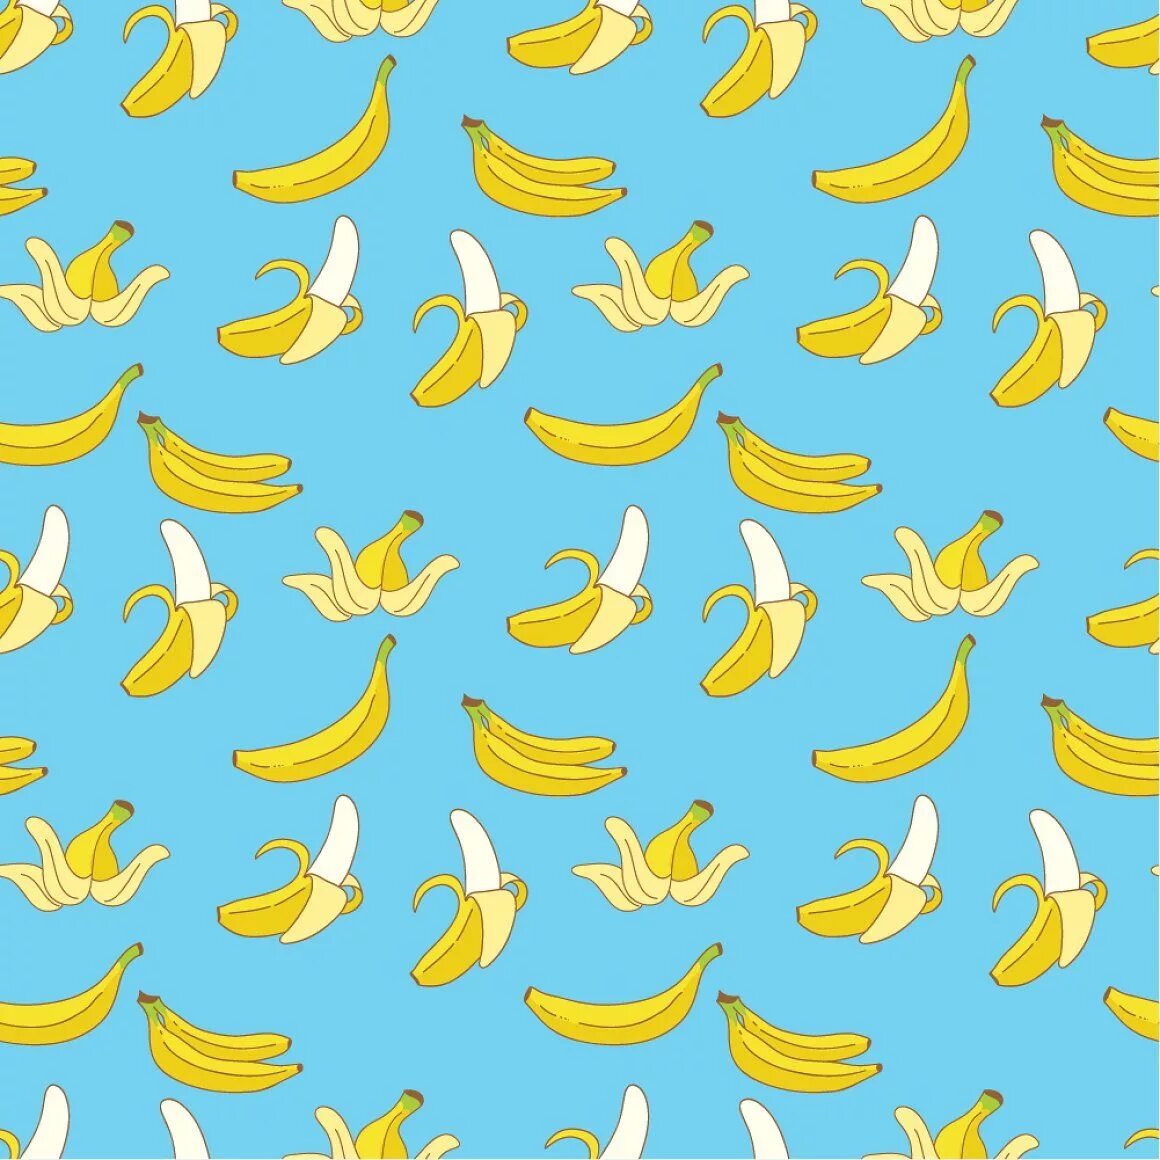 Бананчики. Бананы паттерн. Бананы фон. Обои с бананами. Банан на синем фоне.